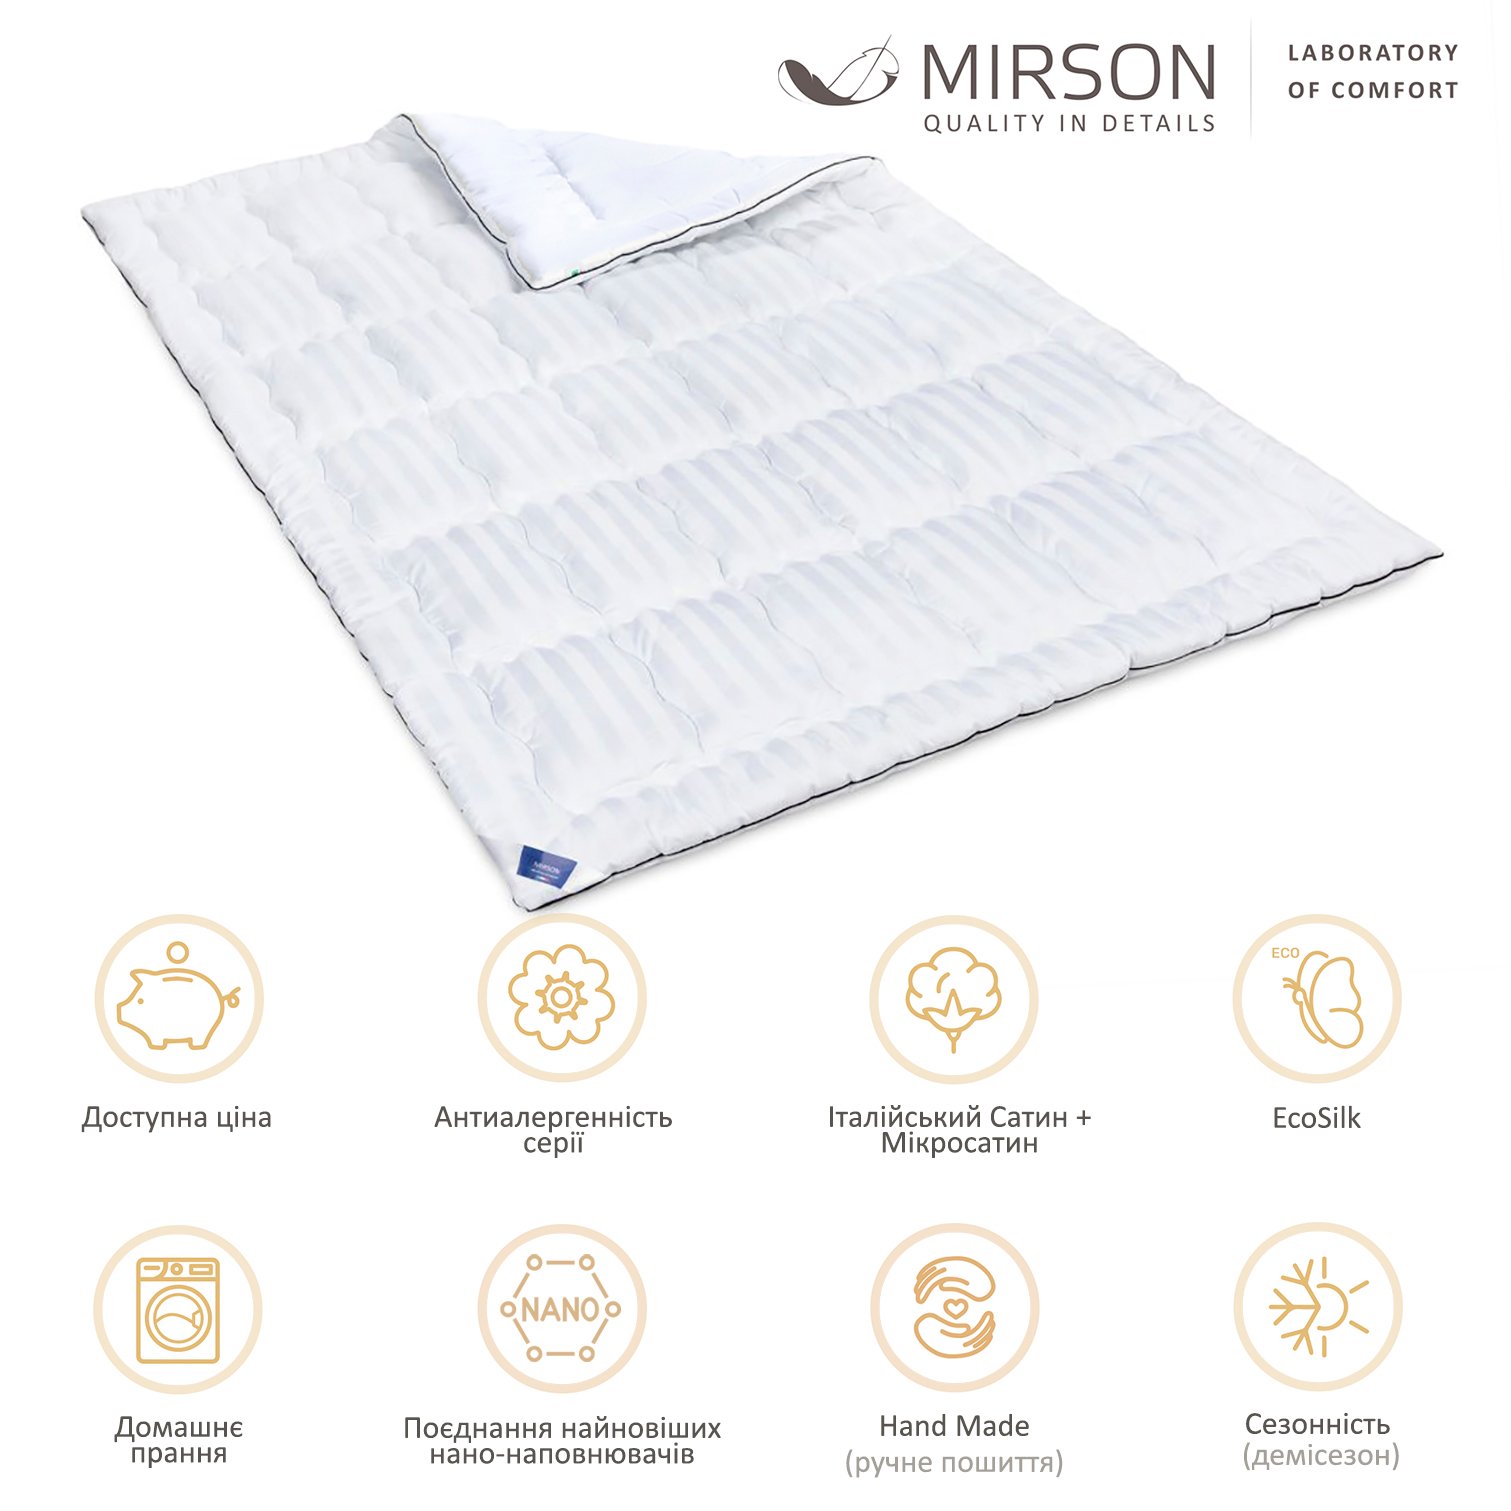 Одеяло антиаллергенное MirSon Royal Pearl Hand Made EcoSilk №0553, демисезонное, 172x205 см, белое - фото 5